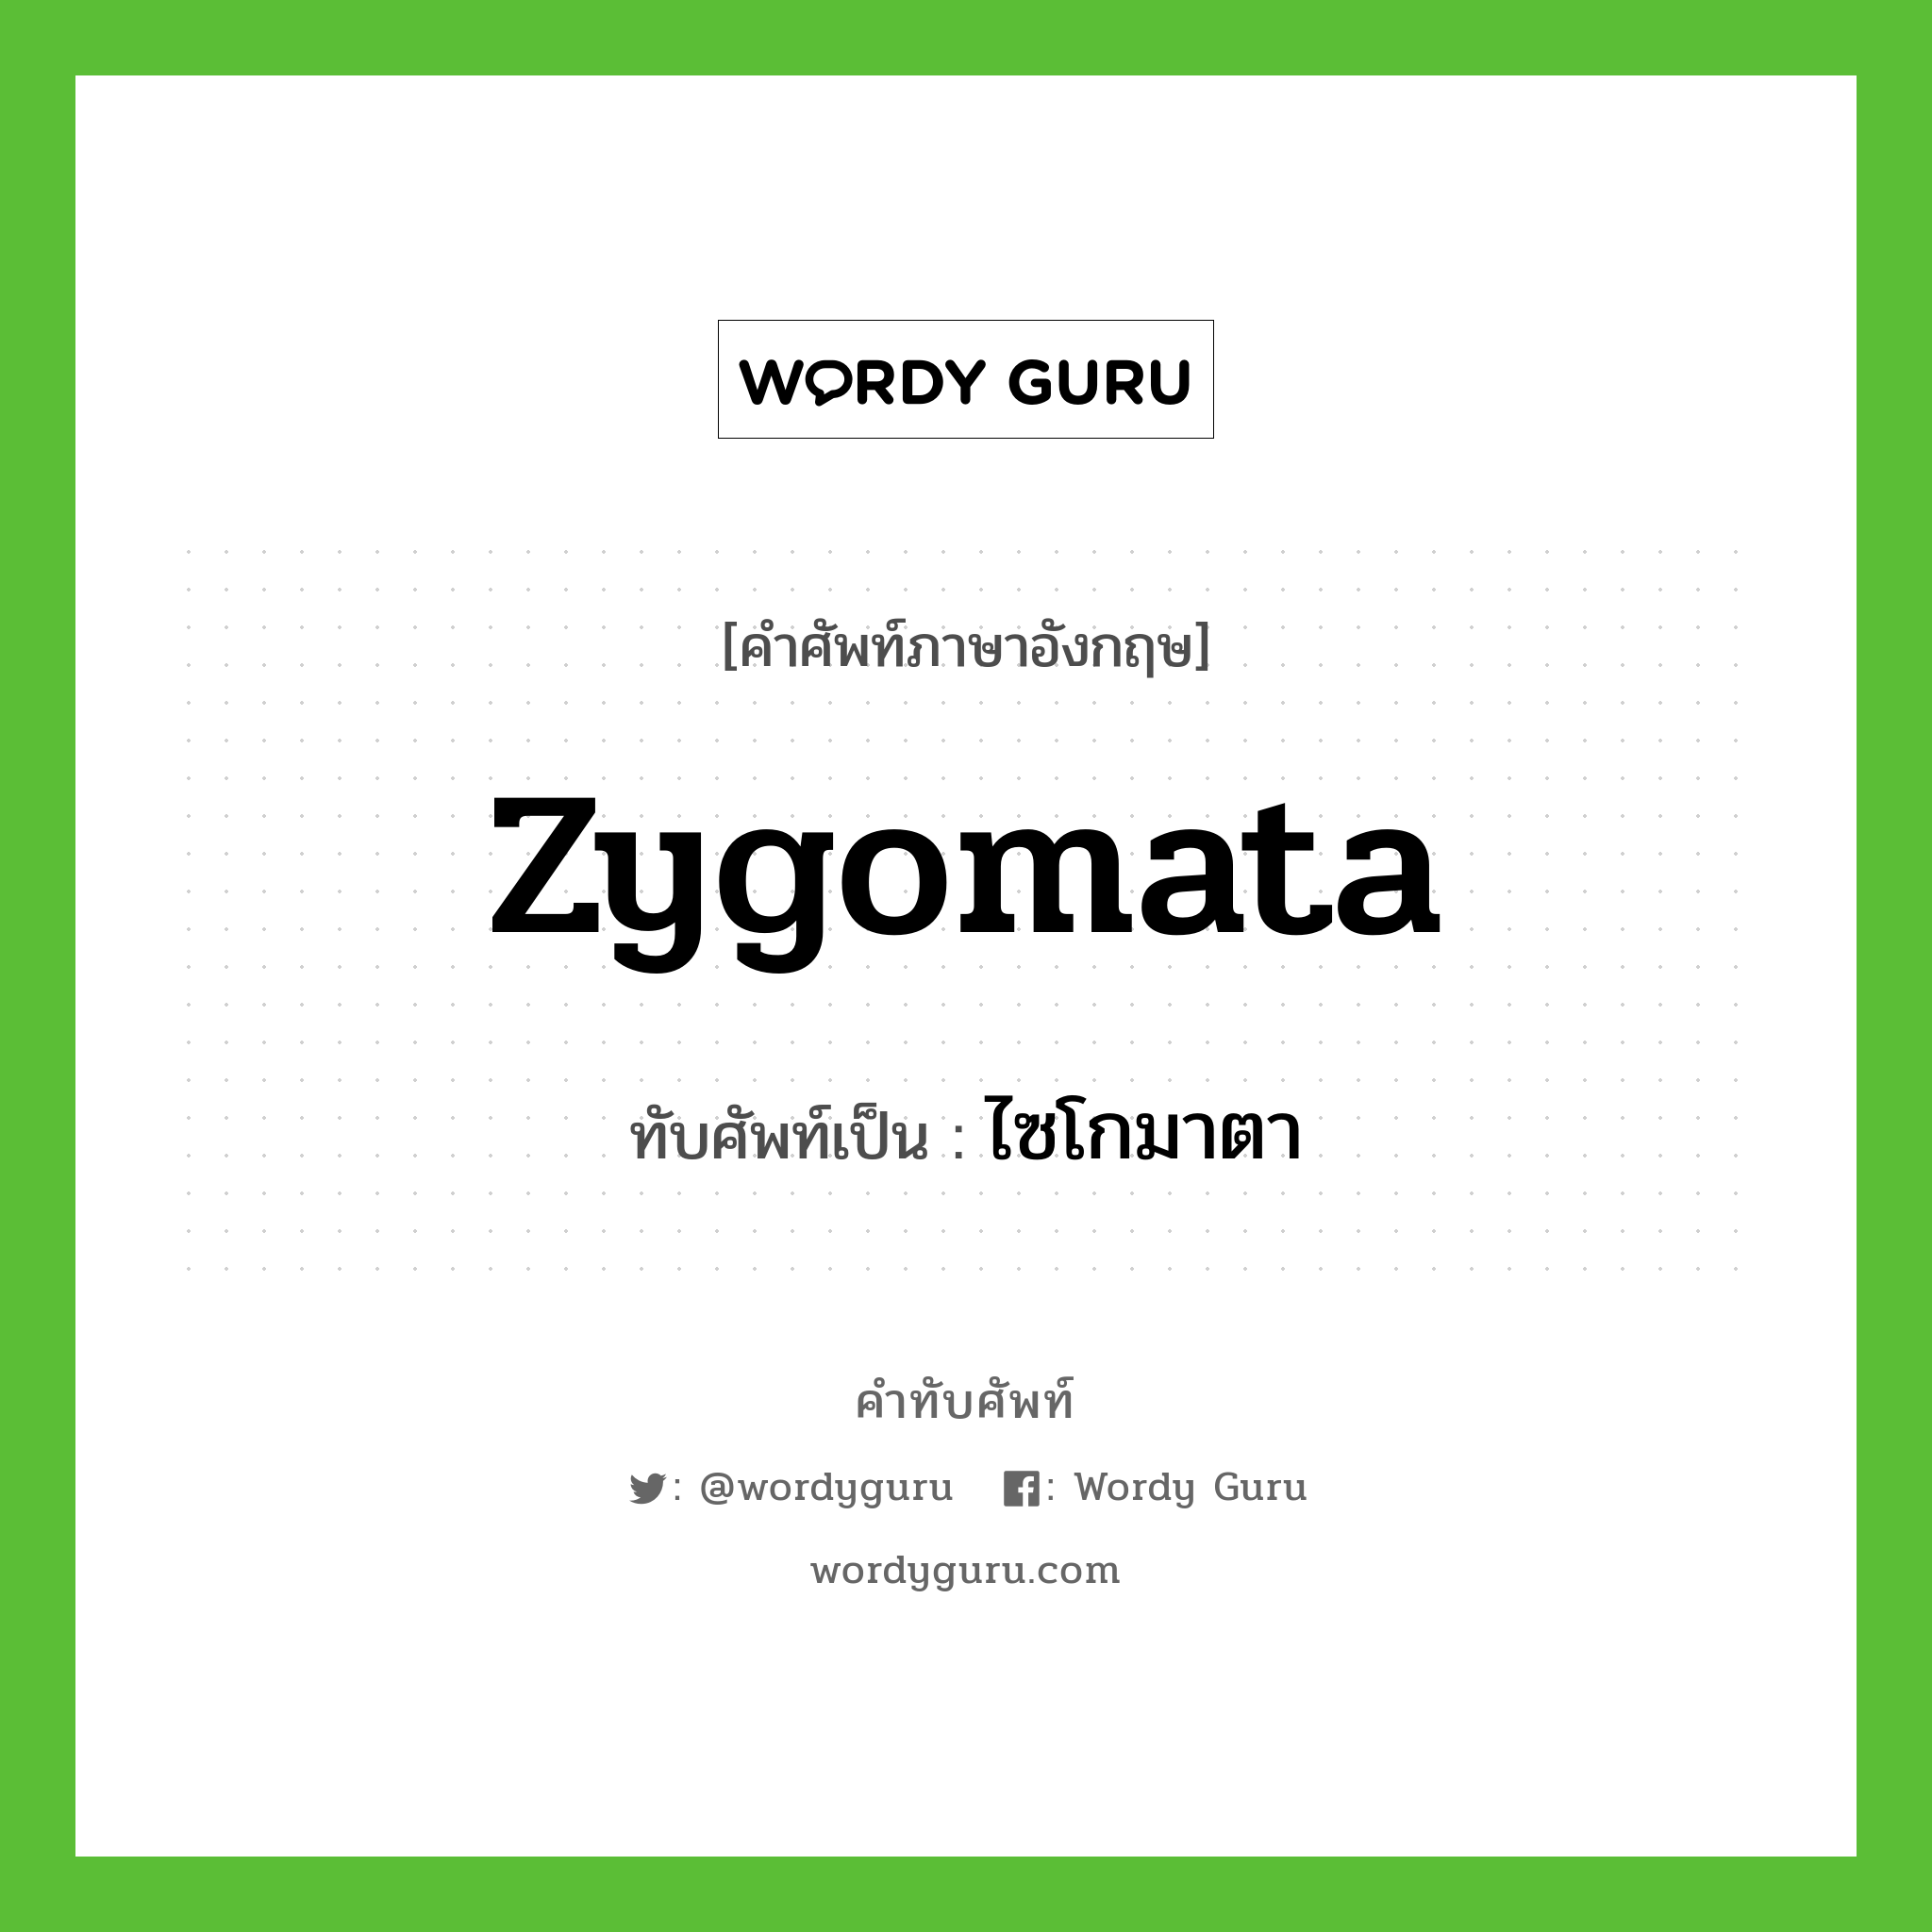 zygomata เขียนเป็นคำไทยว่าอะไร?, คำศัพท์ภาษาอังกฤษ zygomata ทับศัพท์เป็น ไซโกมาตา